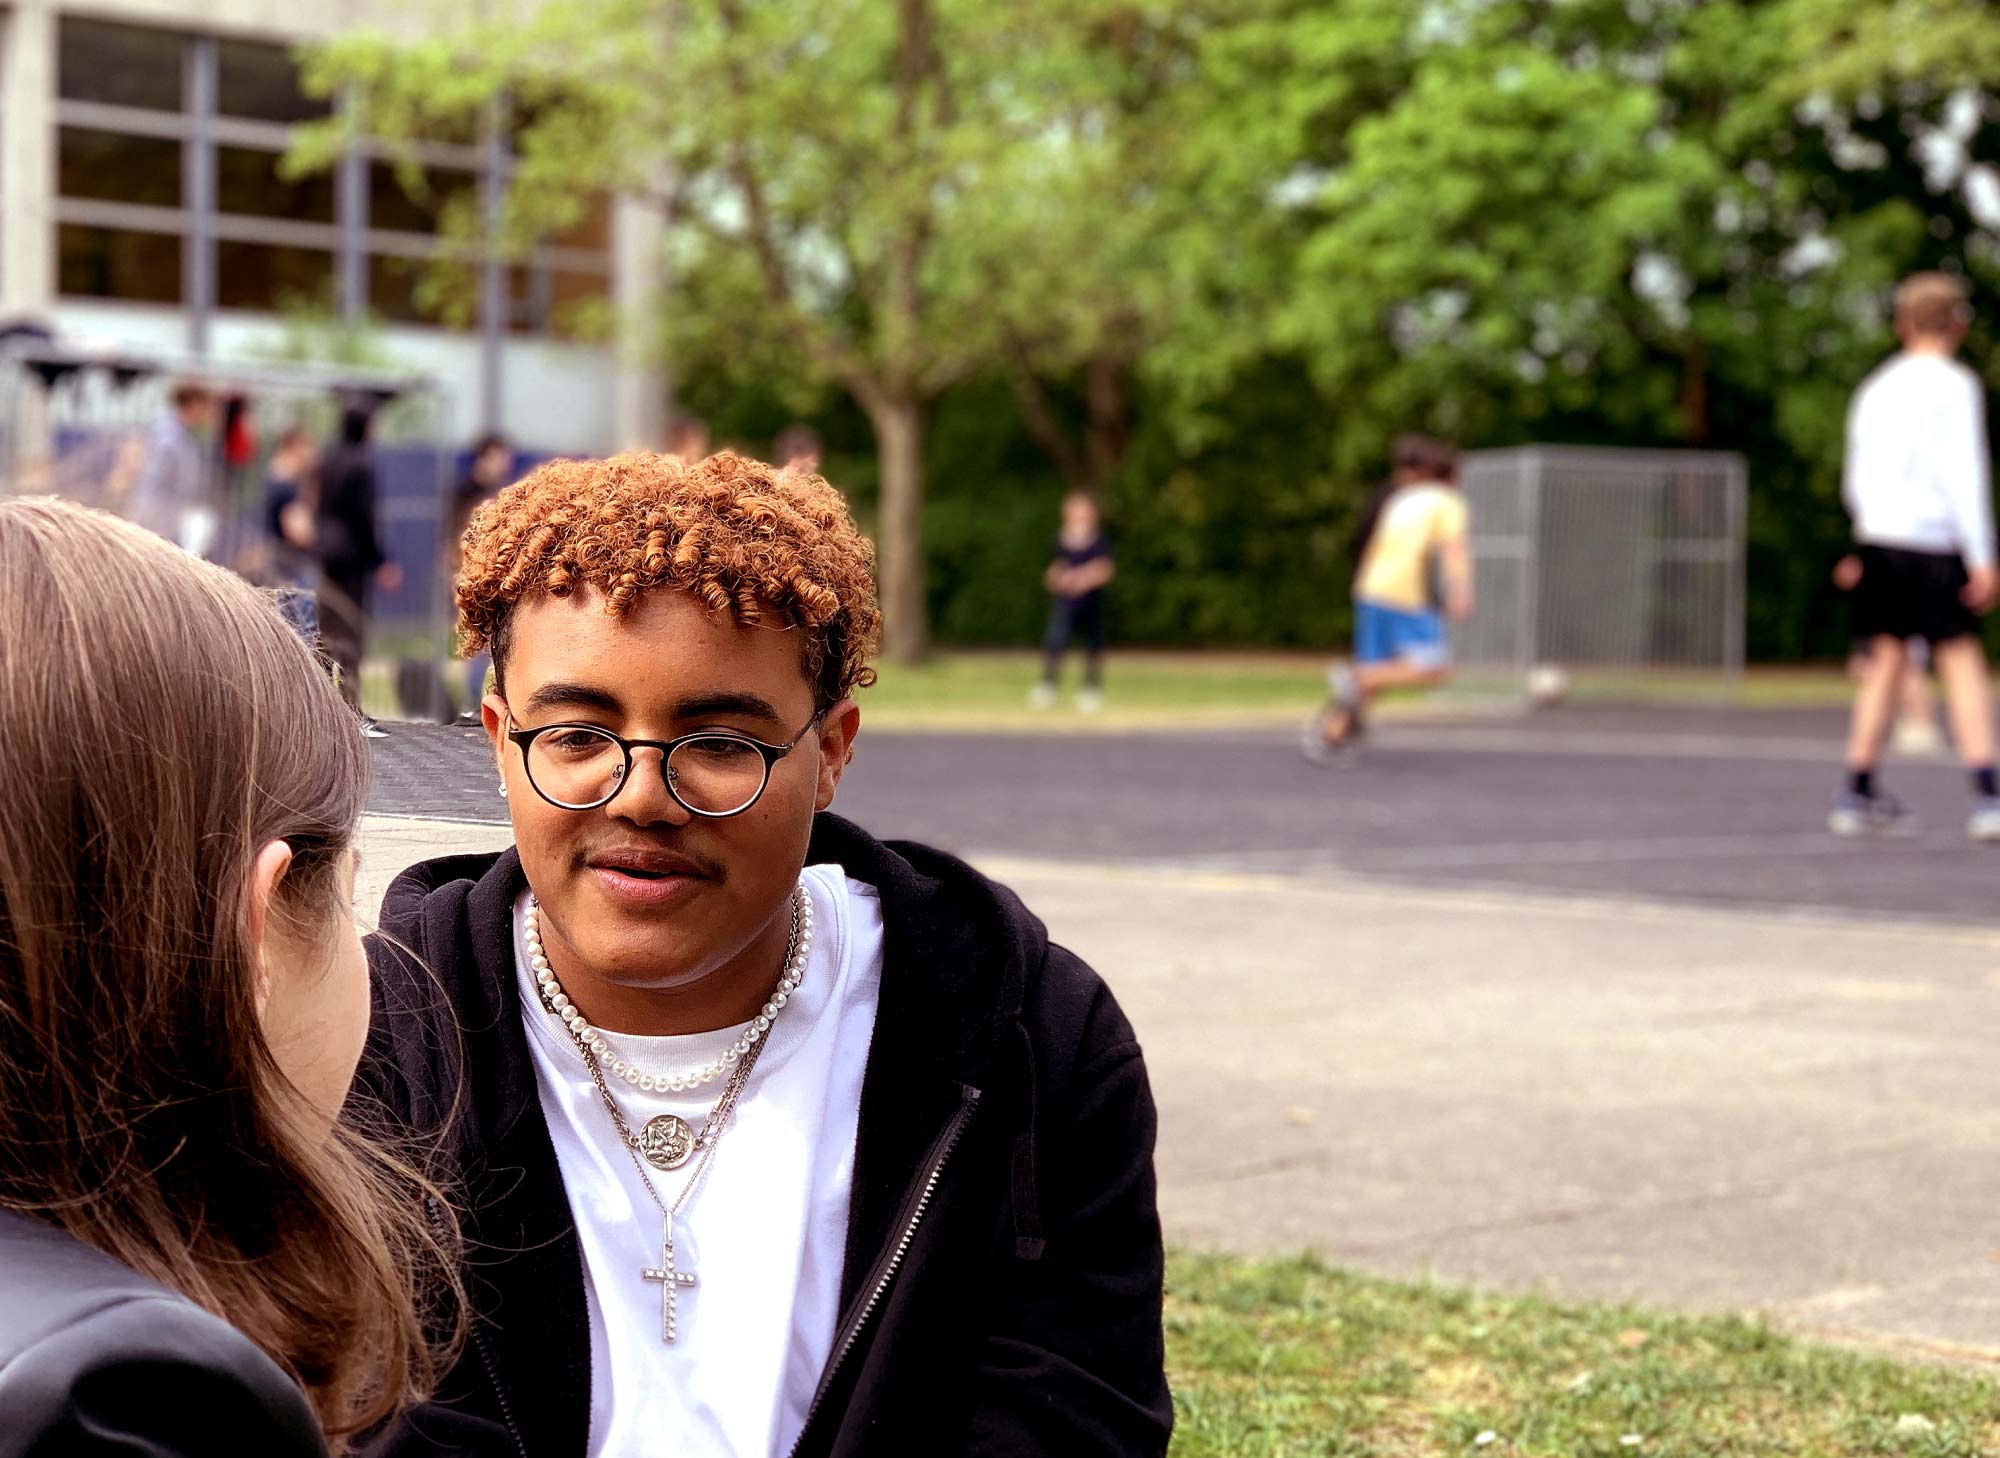 Ein Junge unterhält sich mit einem Mädchen. Im Hintergrund ist unscharf ein Basketballplatz mit spielenden Jugendlichen zu sehen